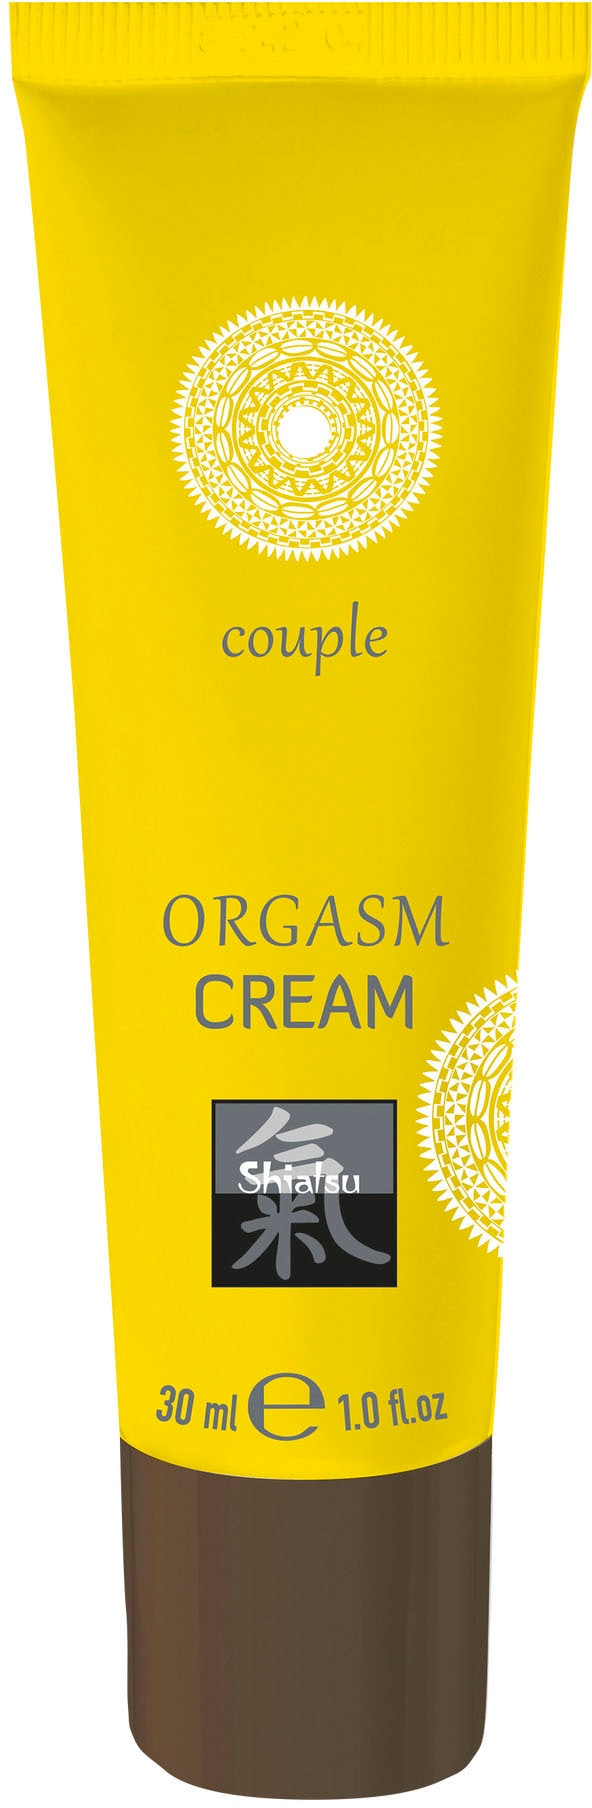 Shiatsu Intimcreme Orgasm Cream